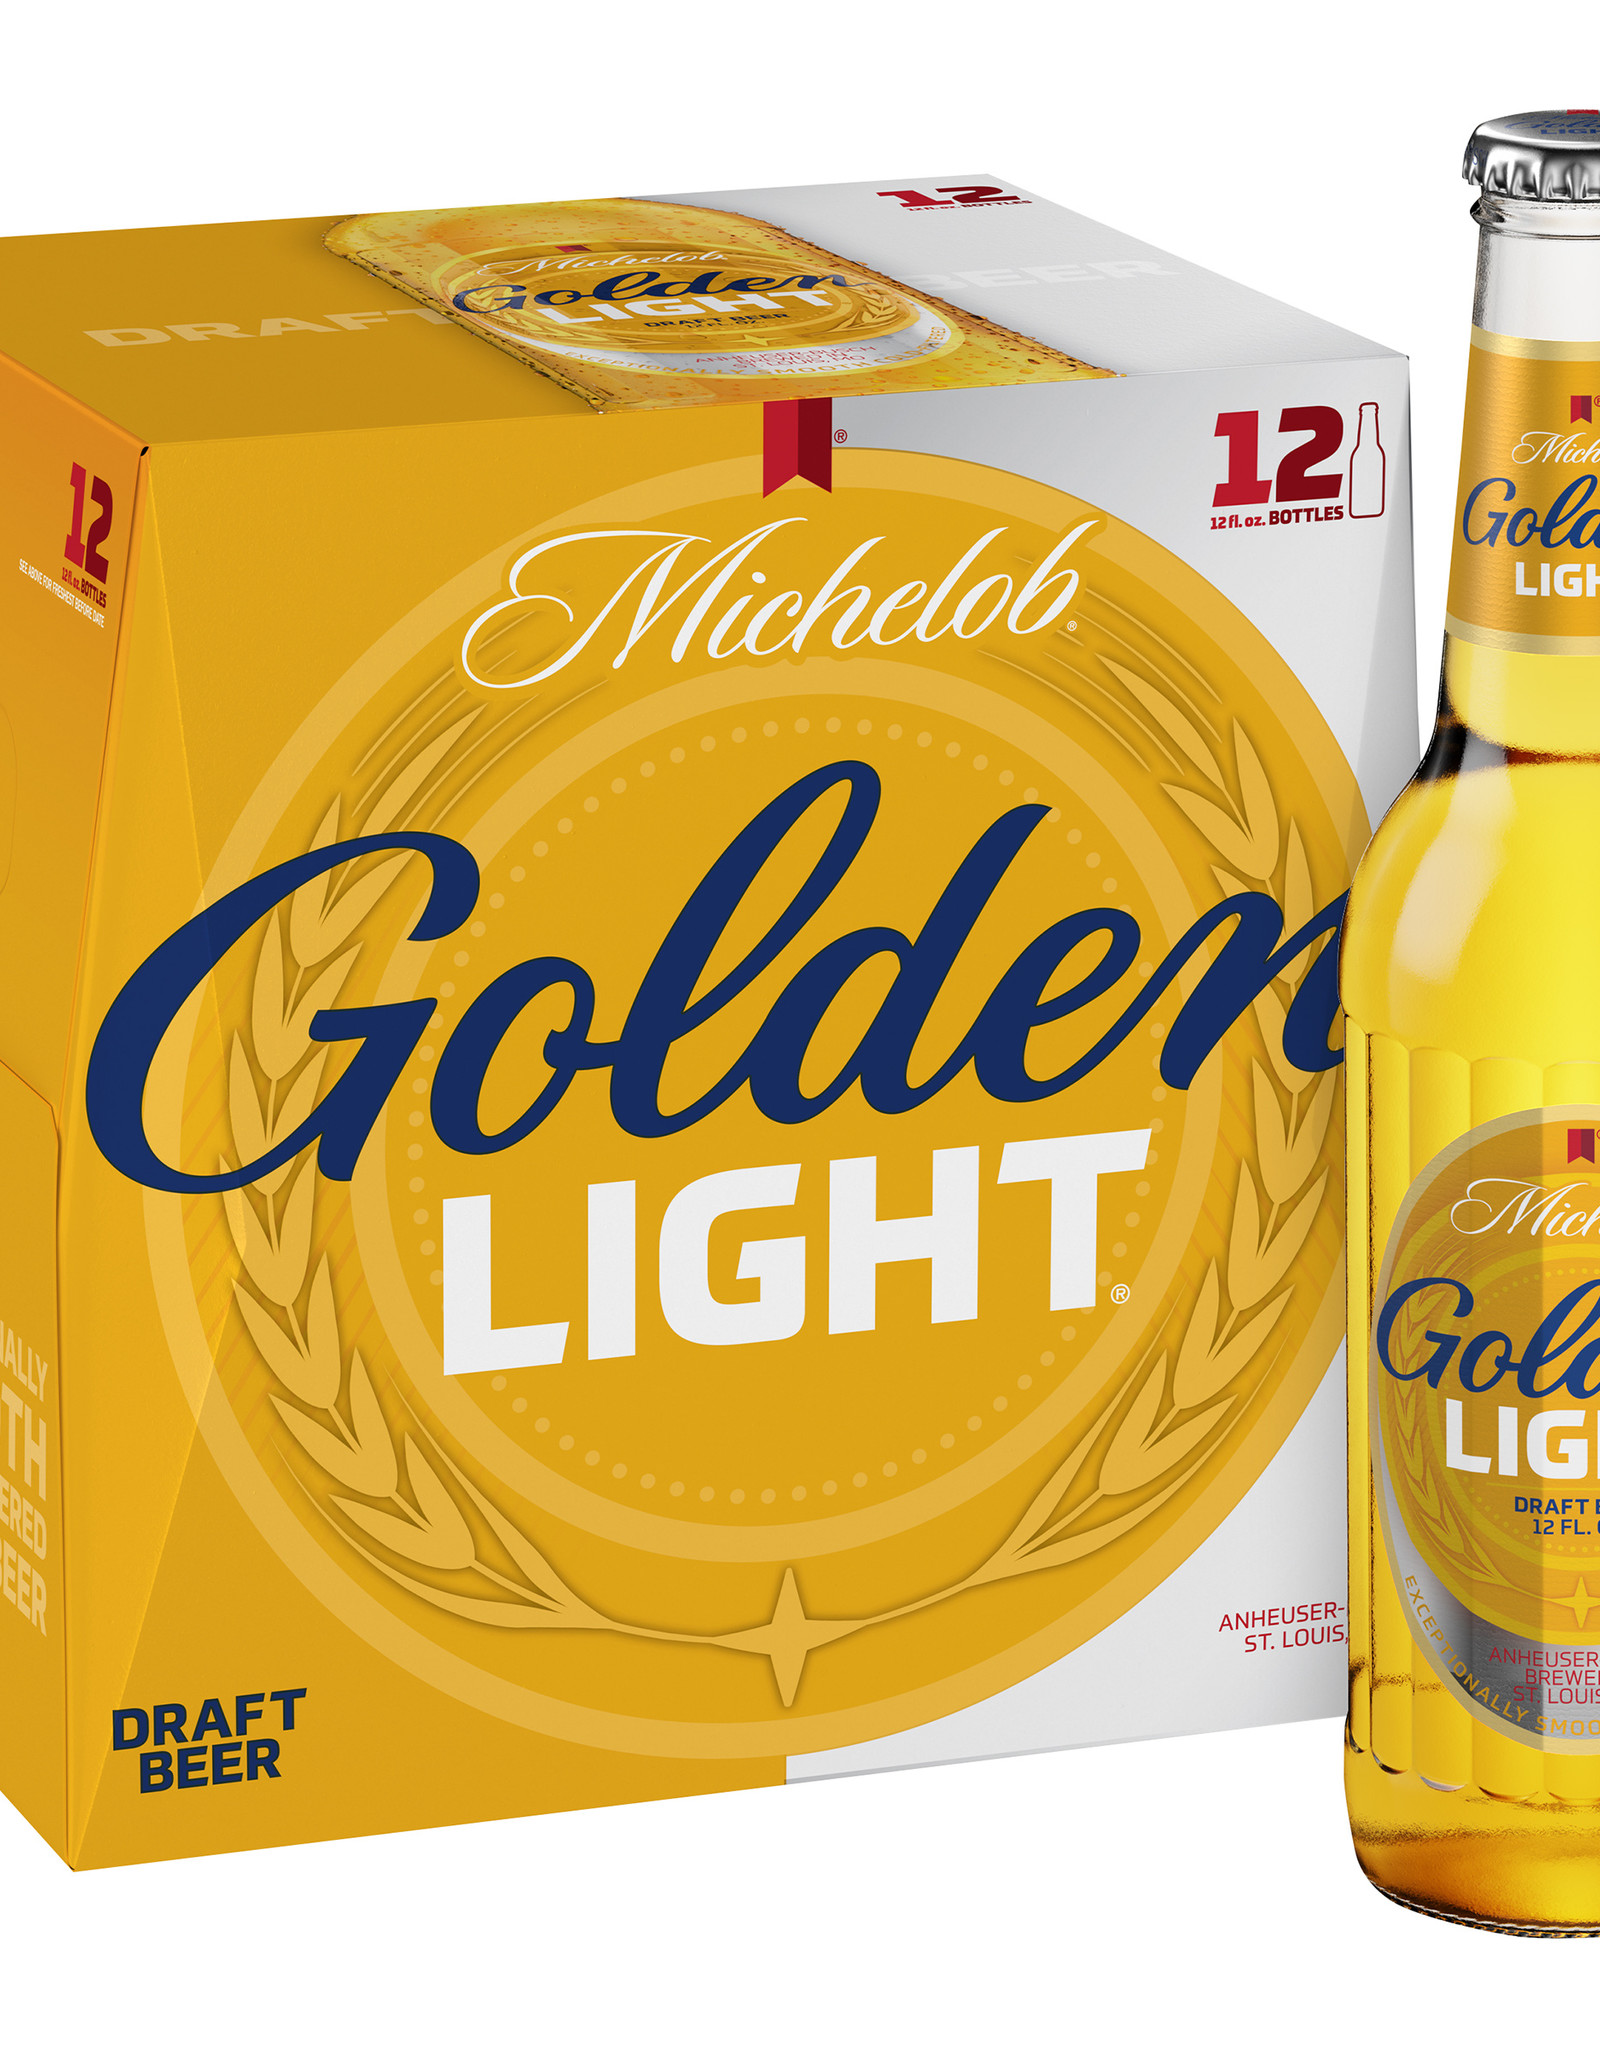 Michelob Golden Light 12x12 oz bottles